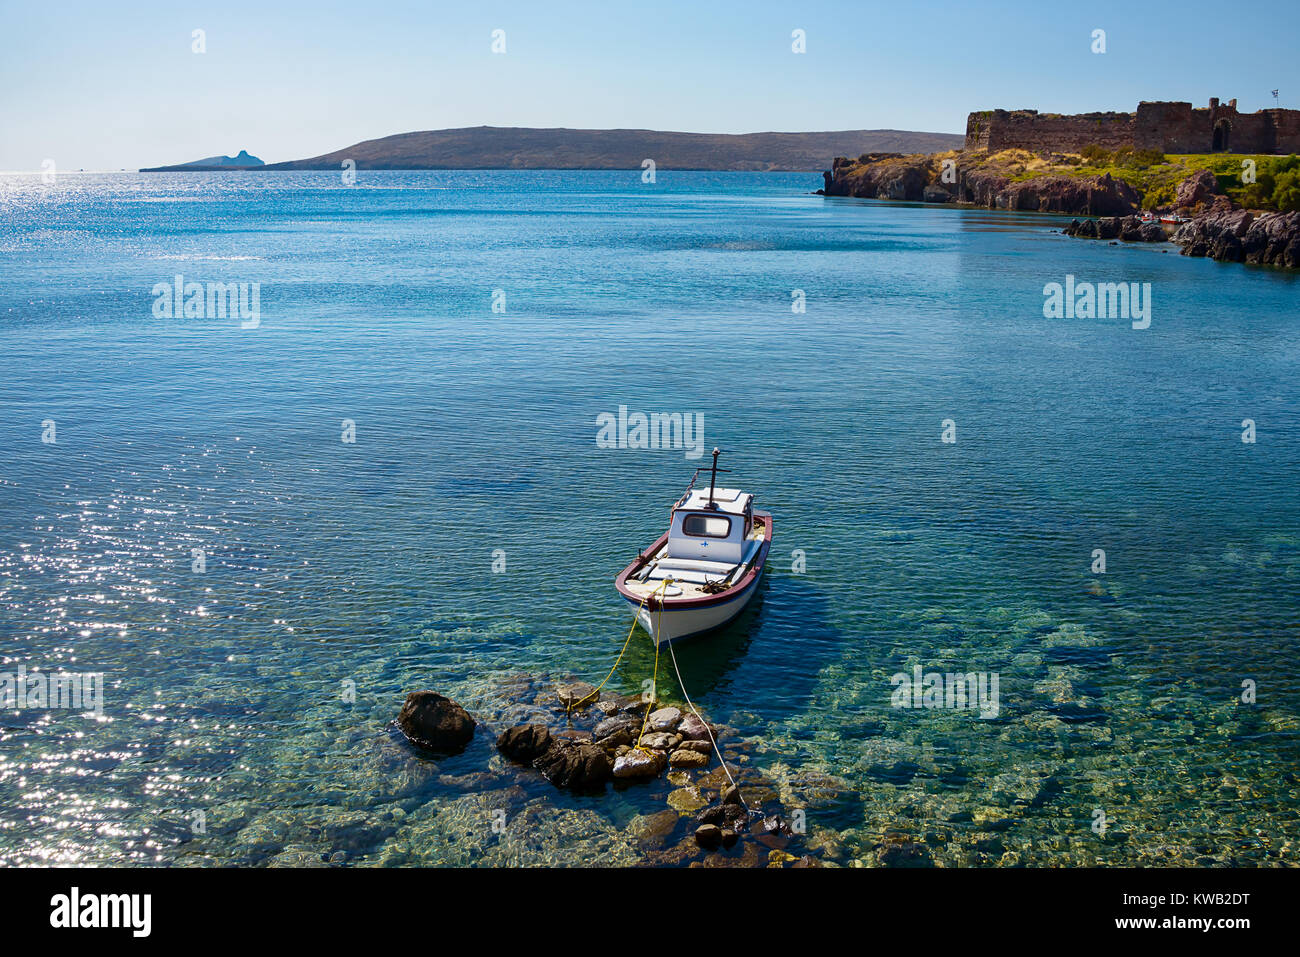 Petit bateau de pêche amarré à la côte de Sigri avec le château, au bord de l'île de Lesbos, de l'Est de la mer Égée, Grèce, Europe. Banque D'Images